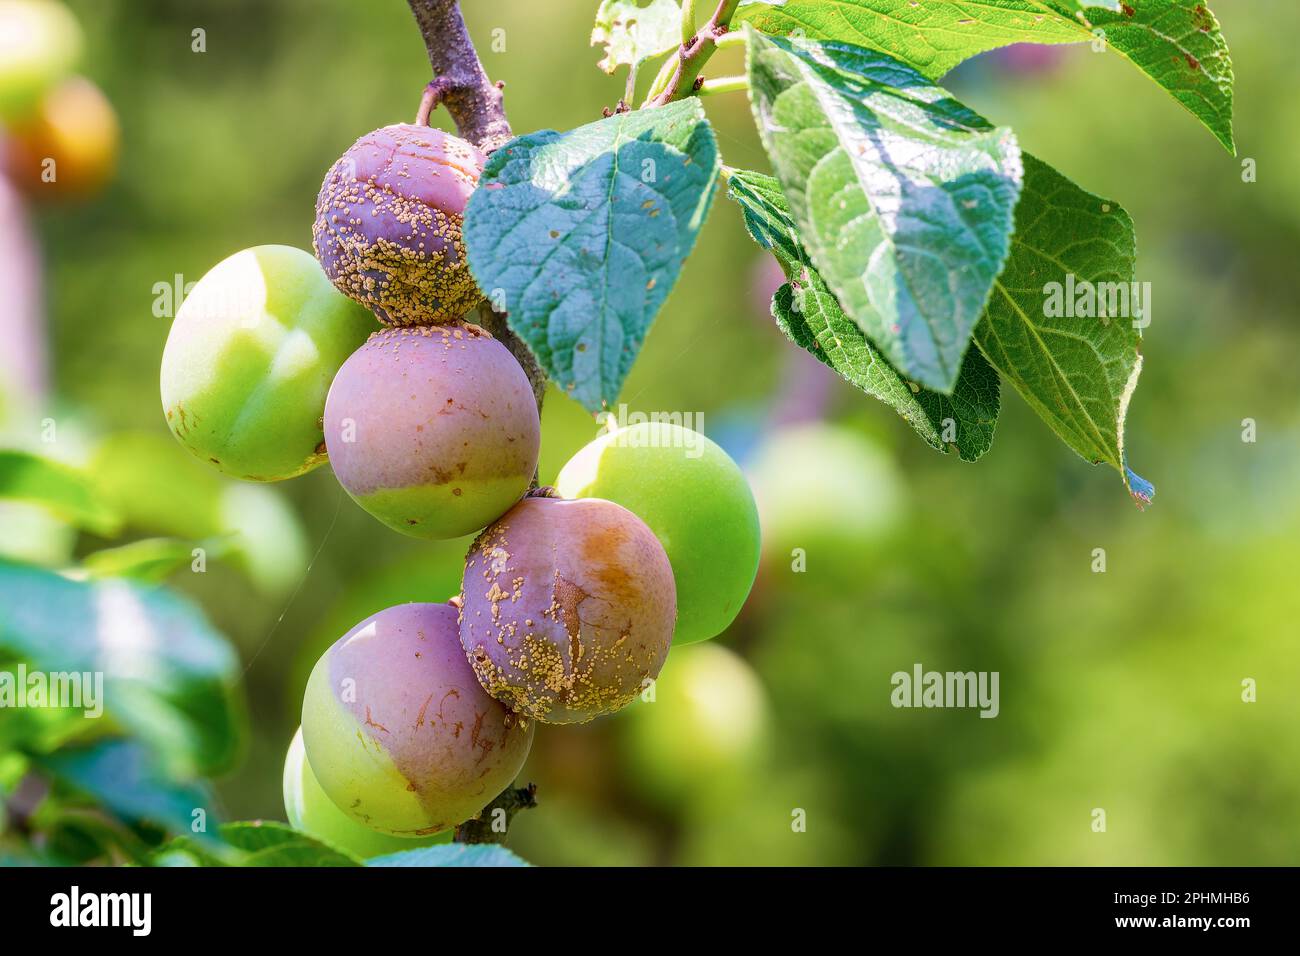 Clasterosporium. Fungal disease of plums Stock Photo